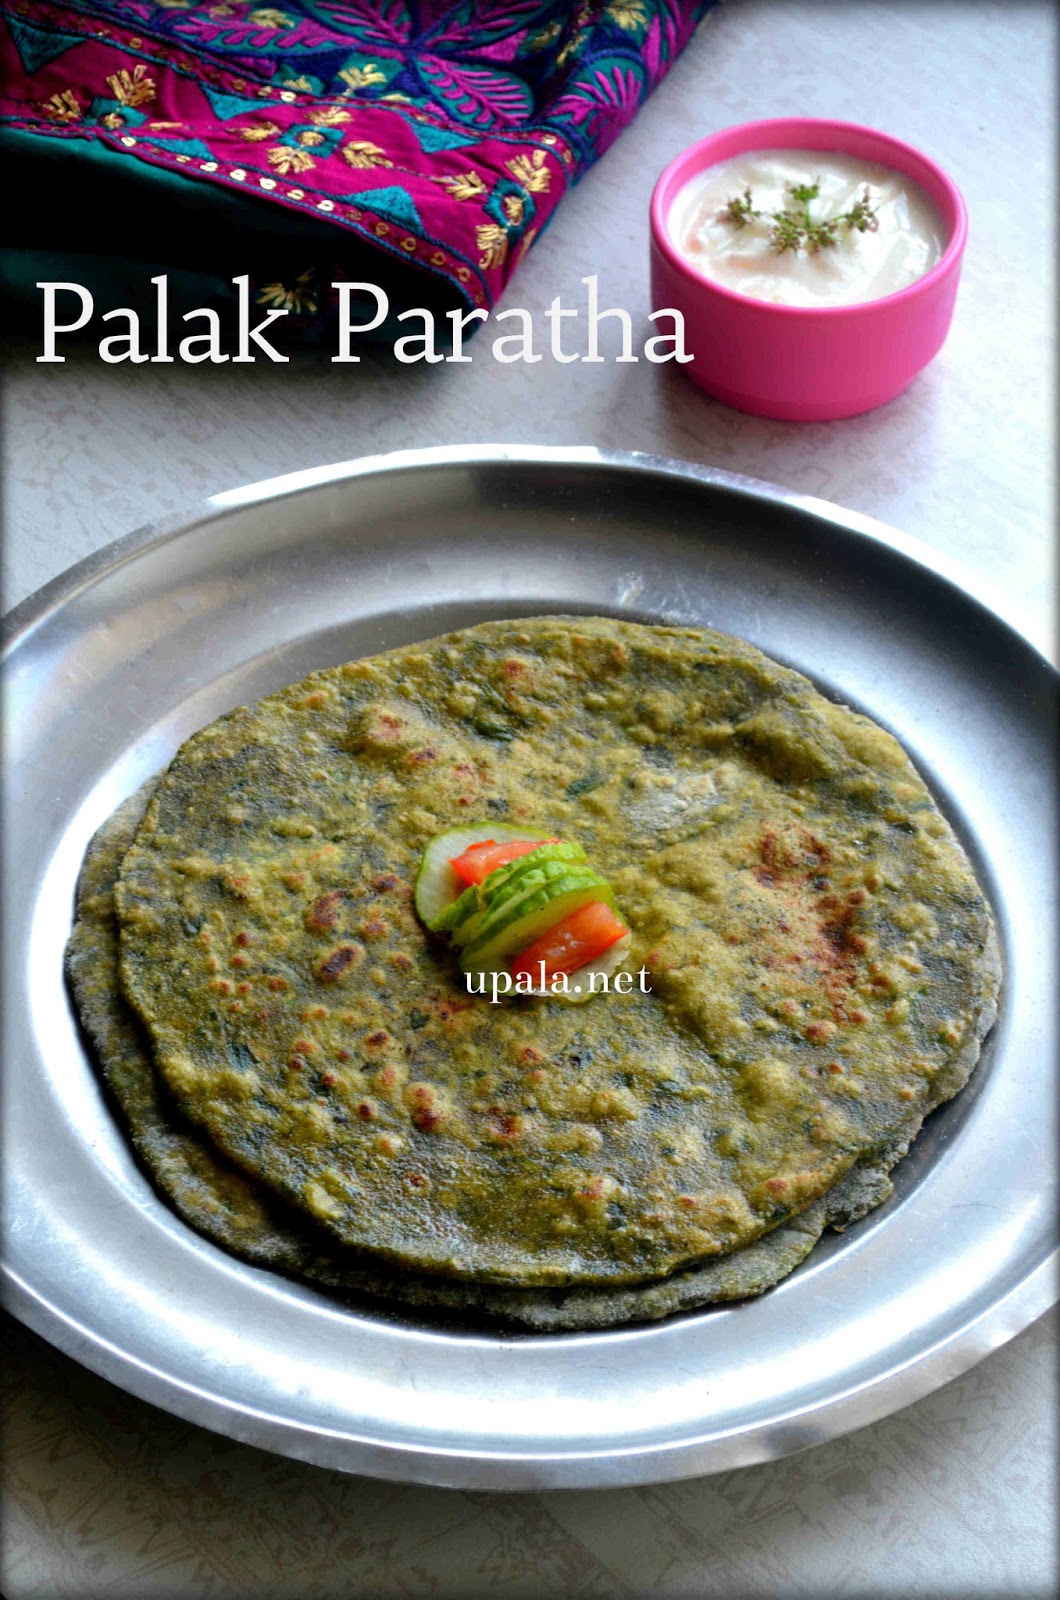 Upala: Palak Paratha/Spinach Paratha